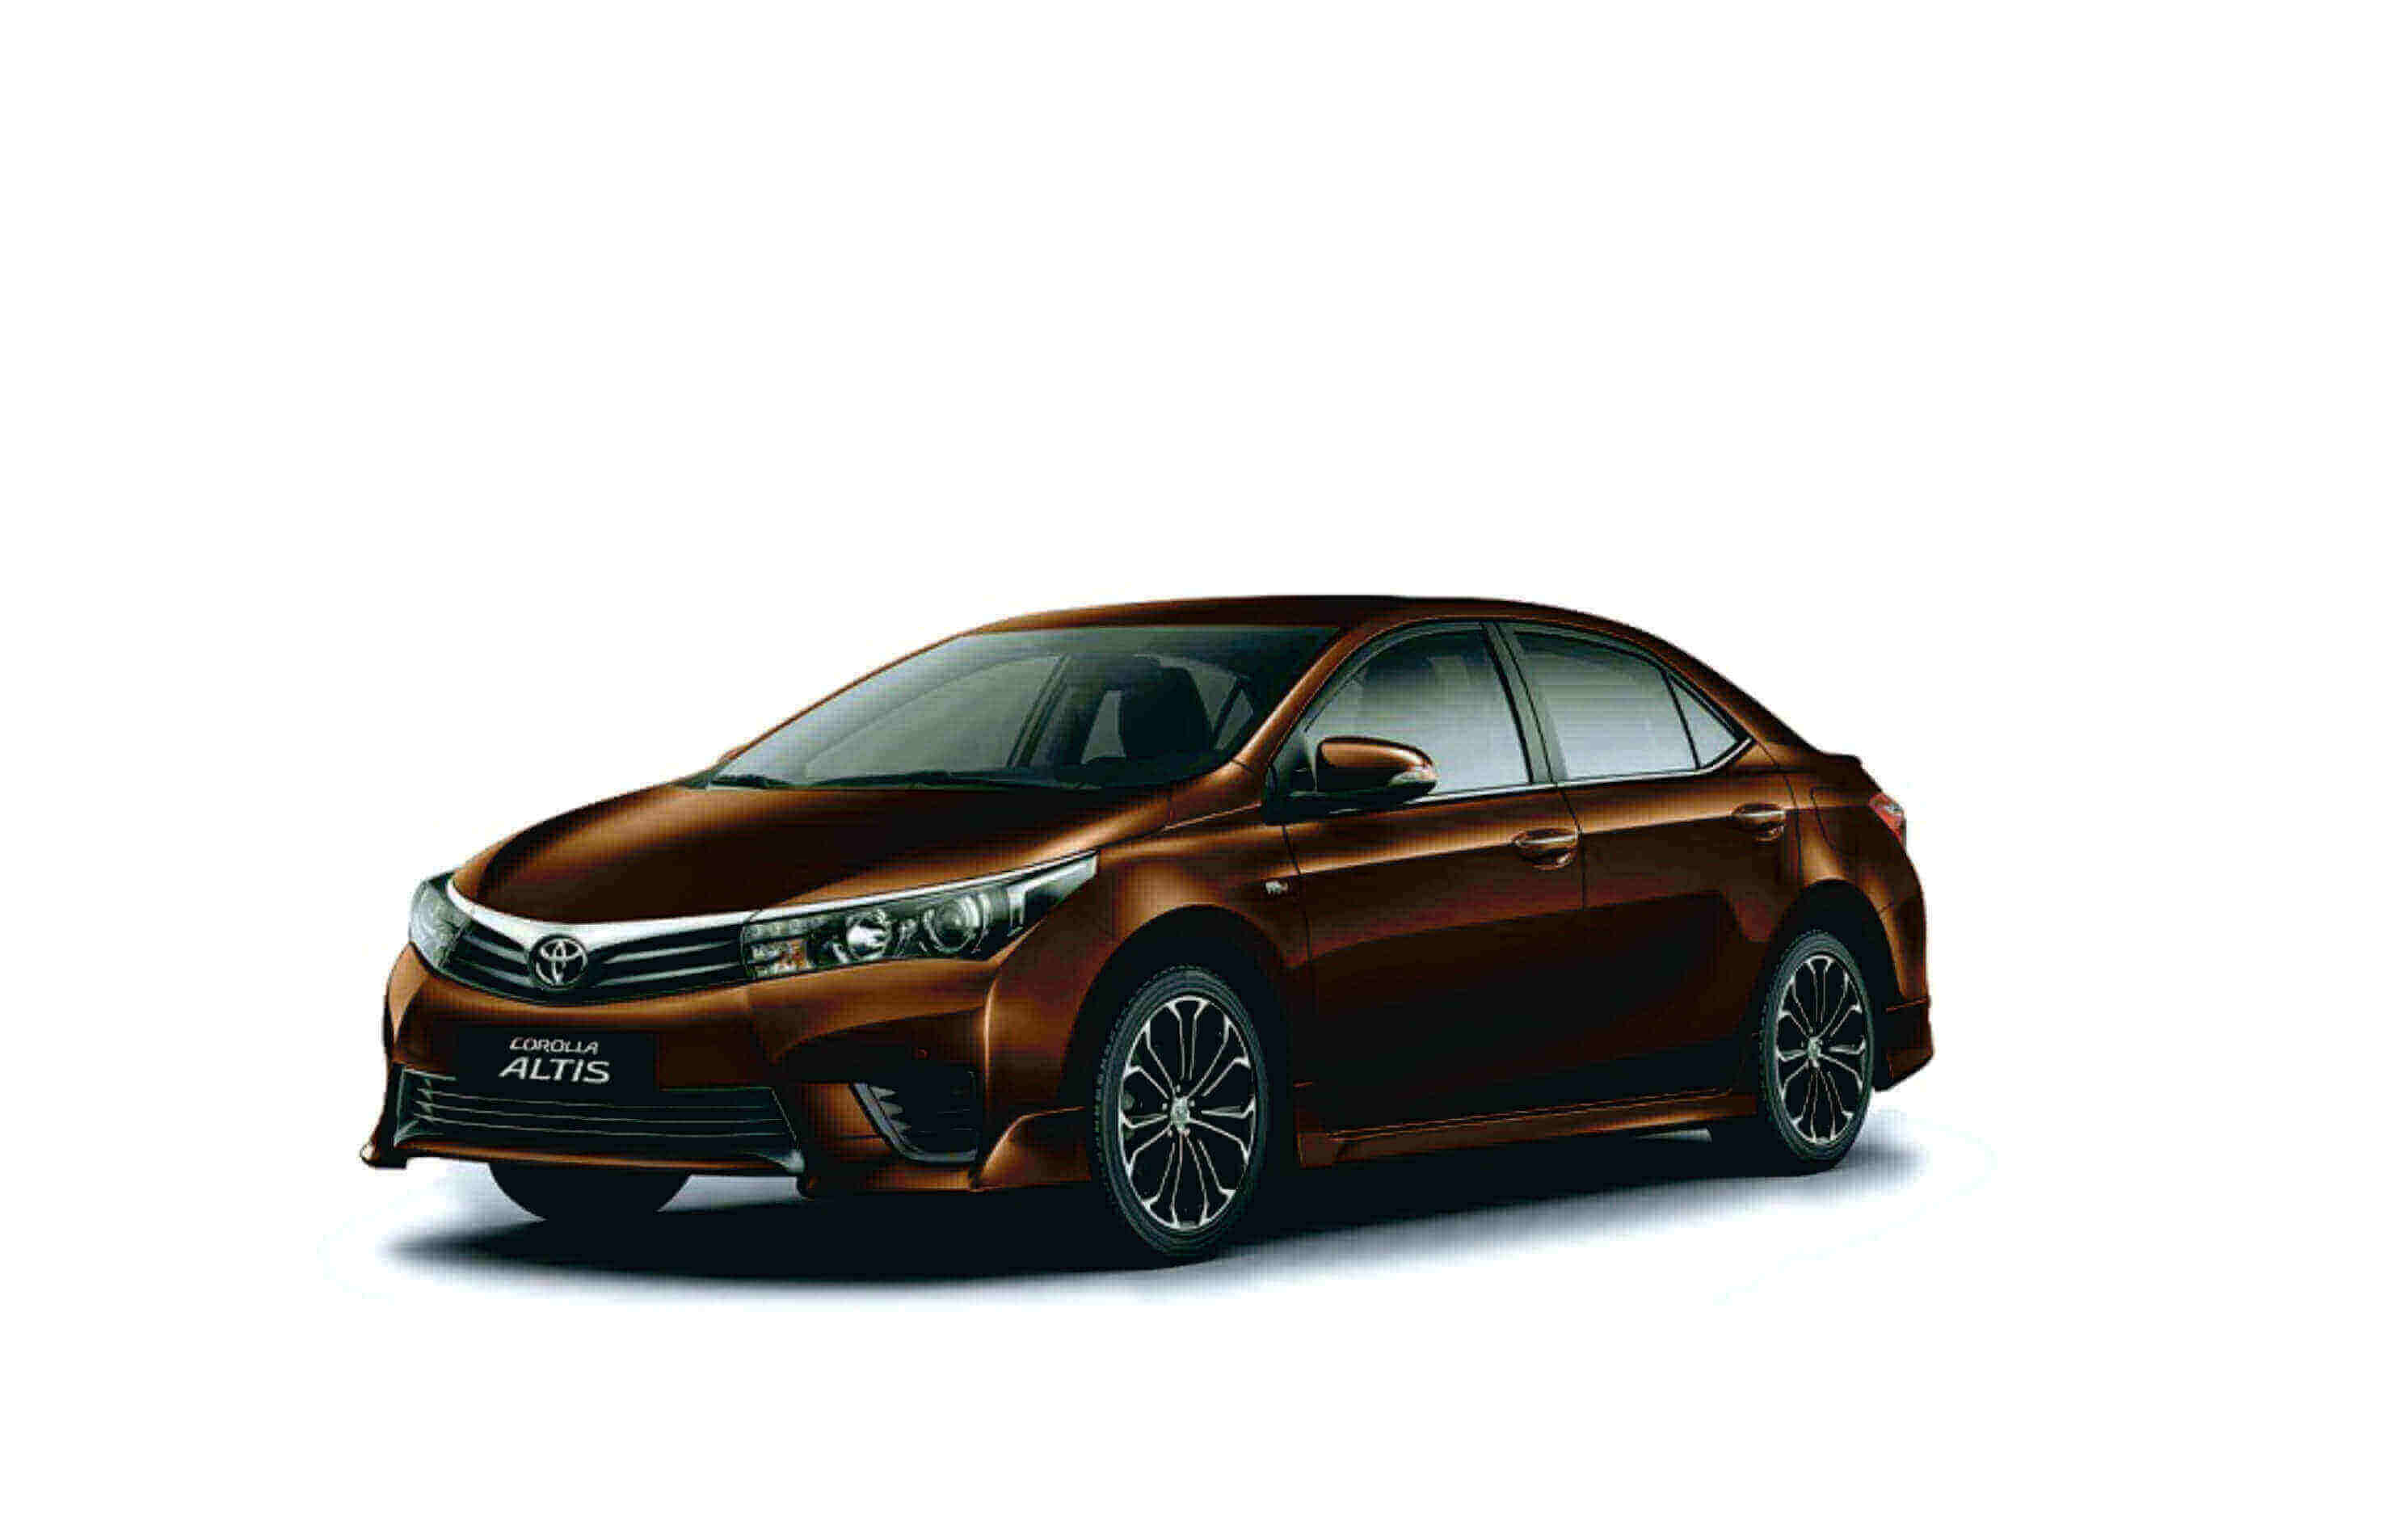 Toyota Altis 2015 giá bao nhiêu tại TPHCM